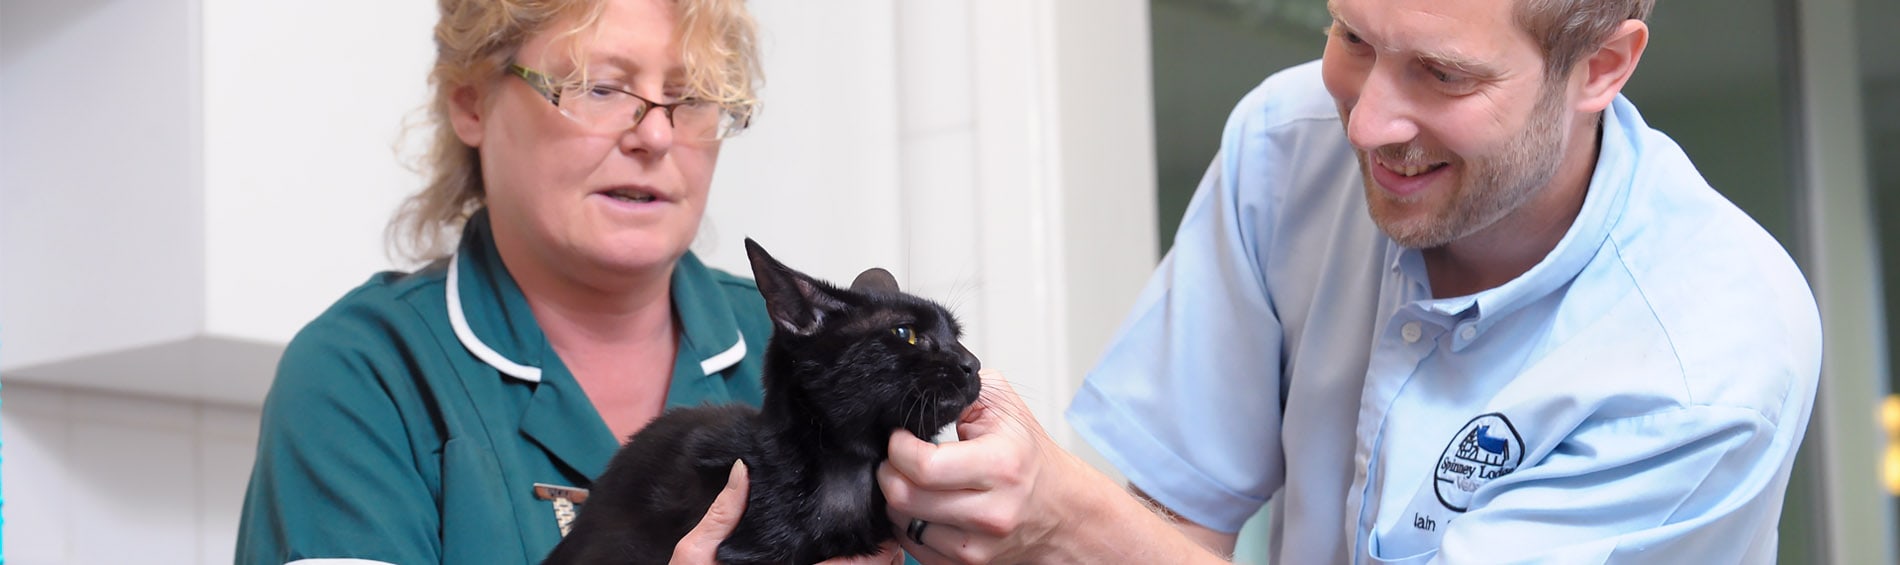 Feline Health Check for Older Cats | Spinney Vets